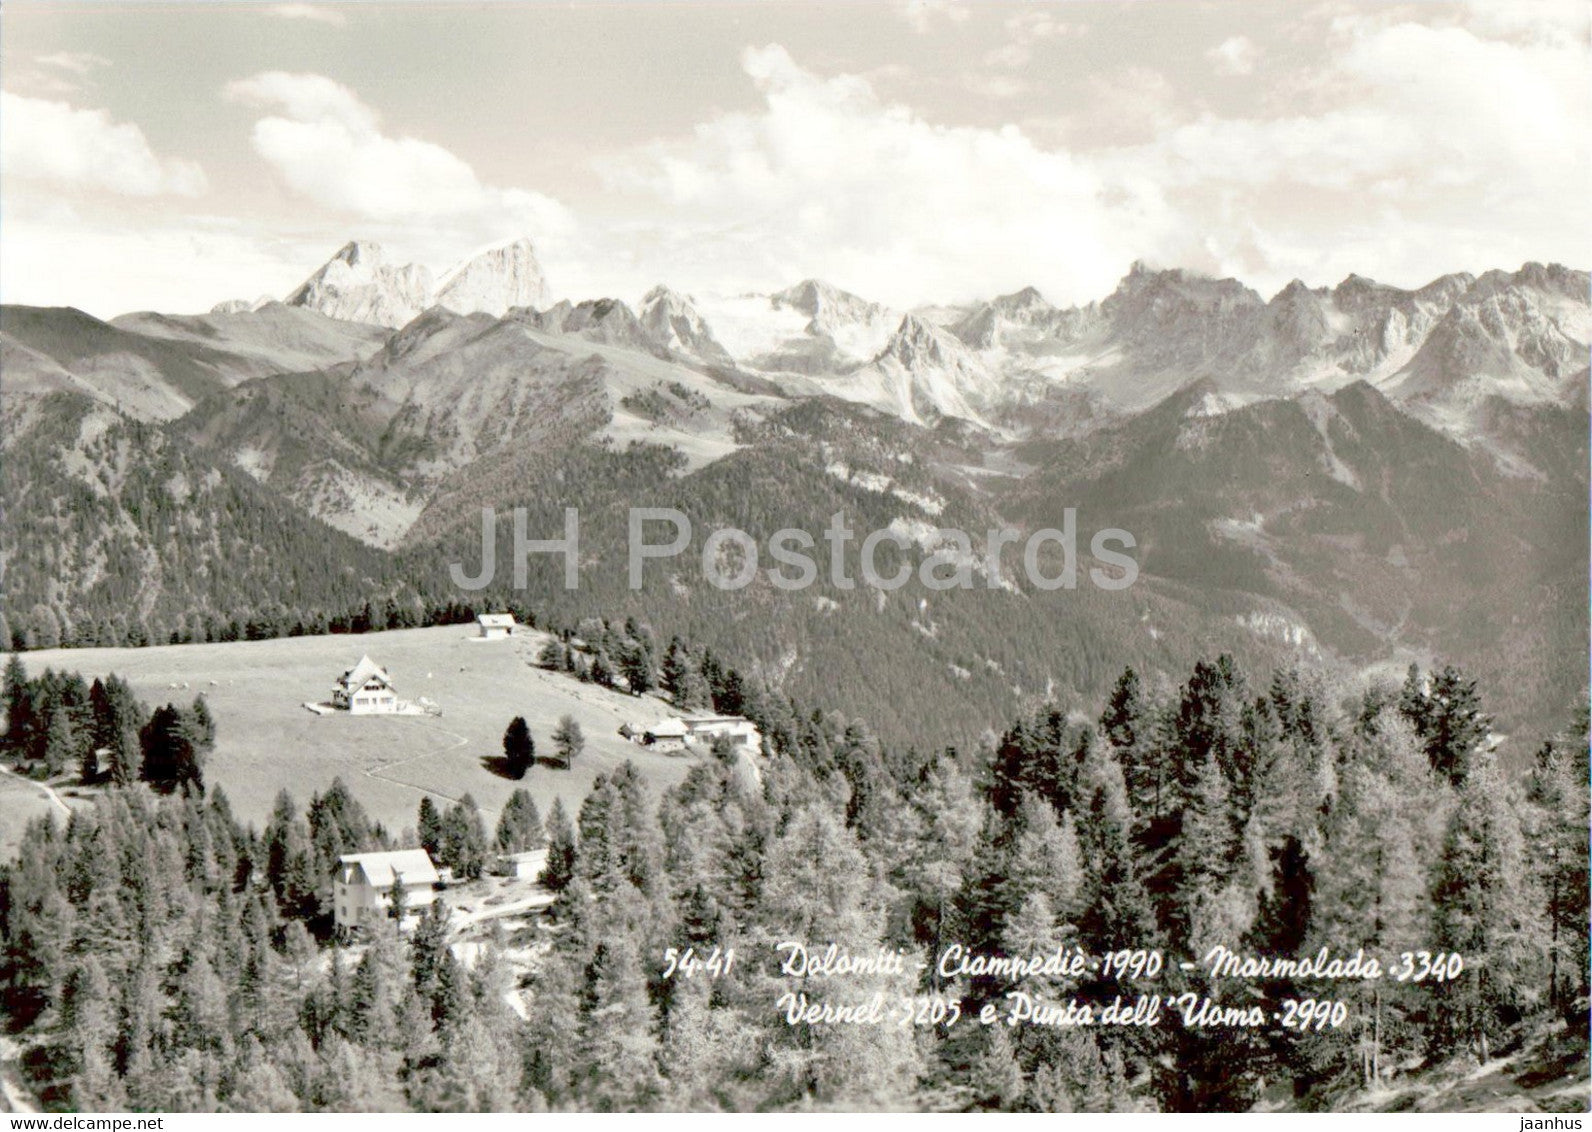 Ciampedie - Marmolada - Vernel - Punta dell Uomo - old postcard - Italy - unused - JH Postcards